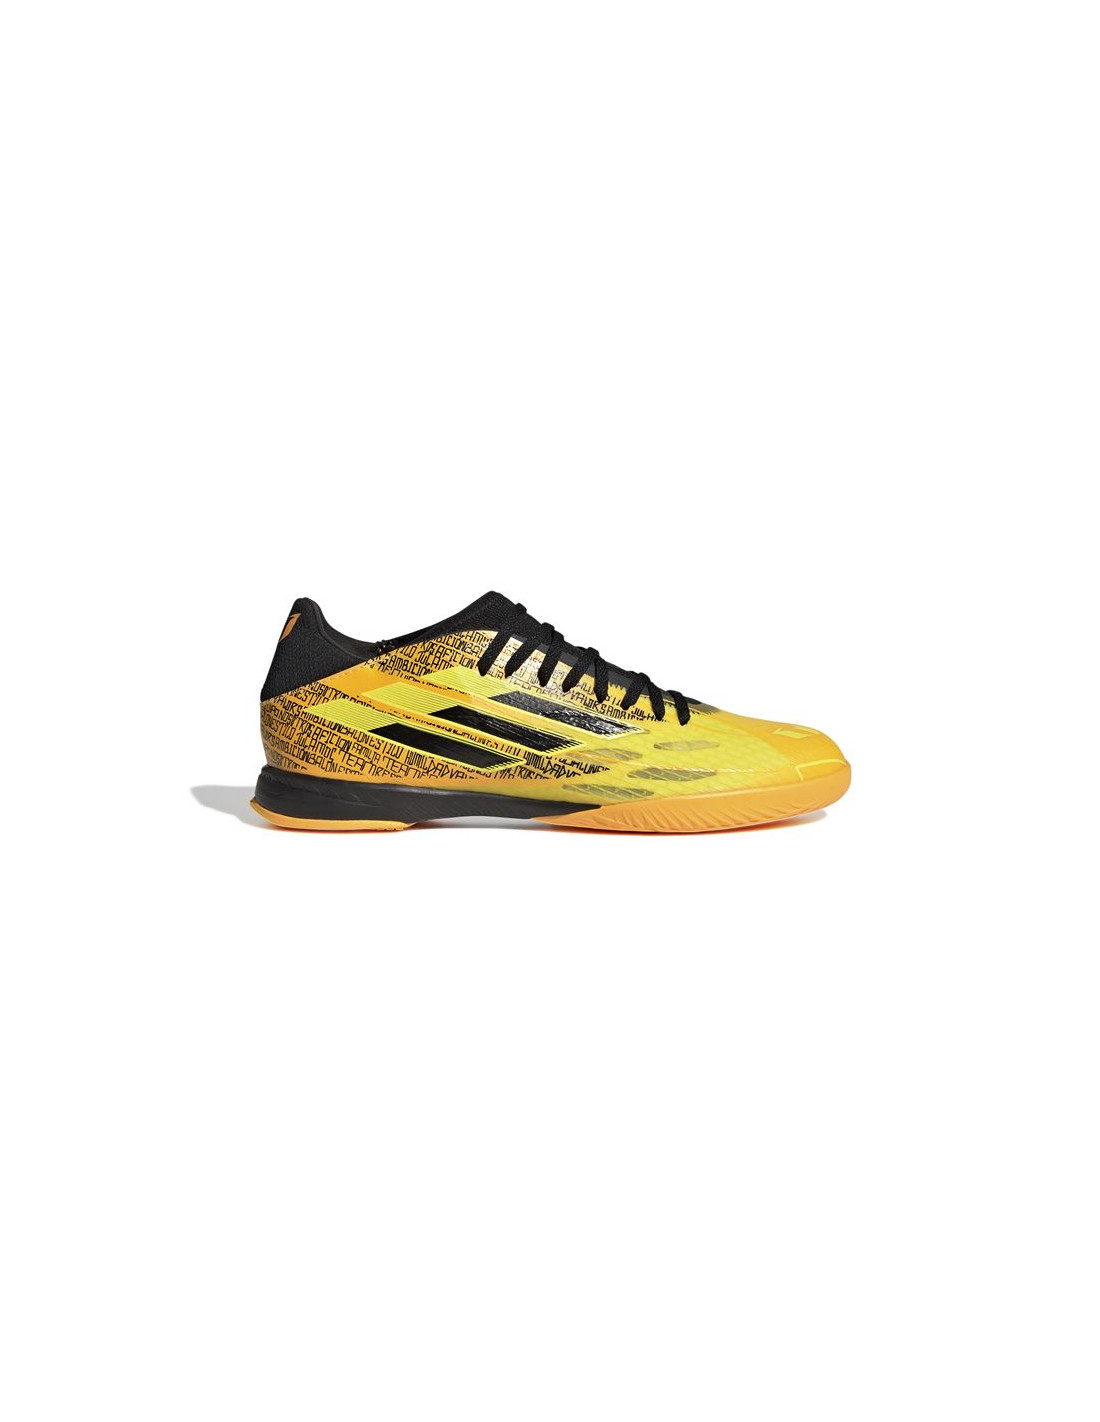 Zapatillas adidas x speedflow messi.4 m yellow